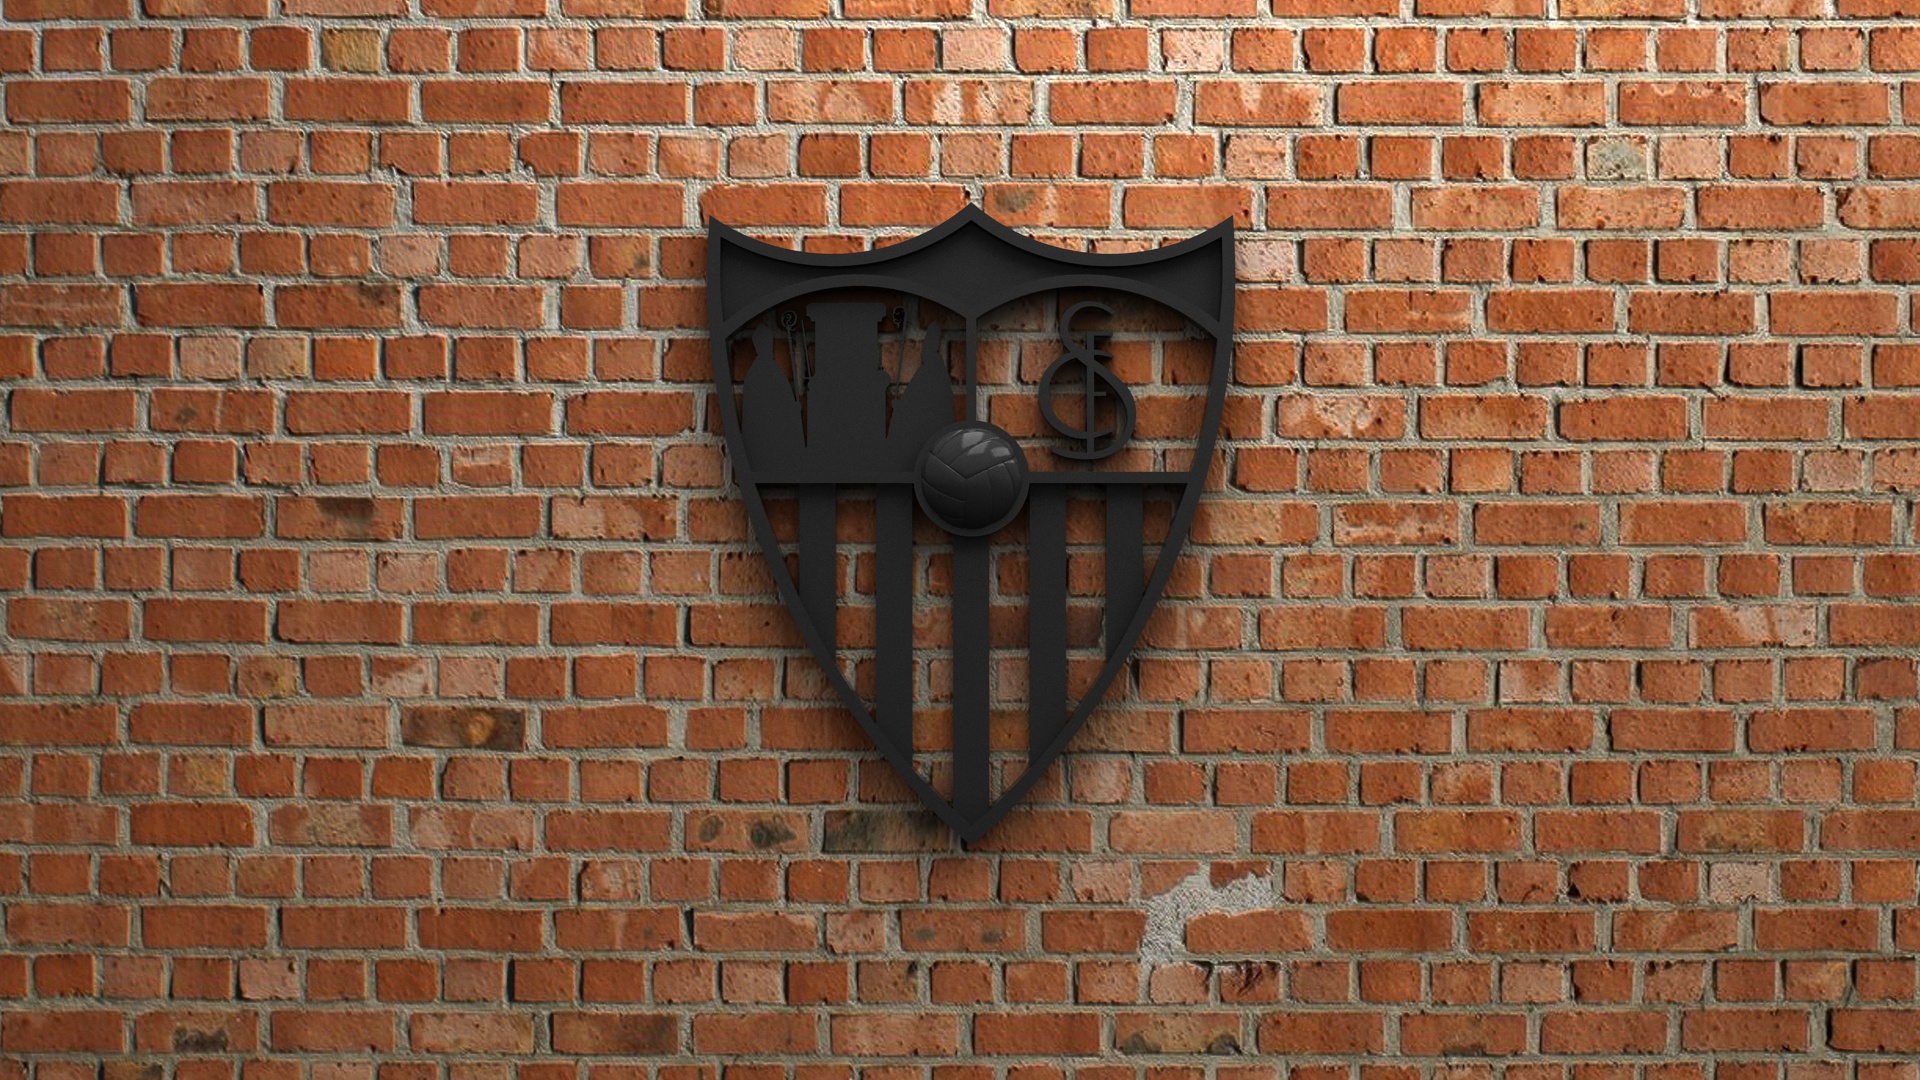 Handy-Wallpaper Sport, Fußball, Logo, Emblem, Fc Sevilla kostenlos herunterladen.